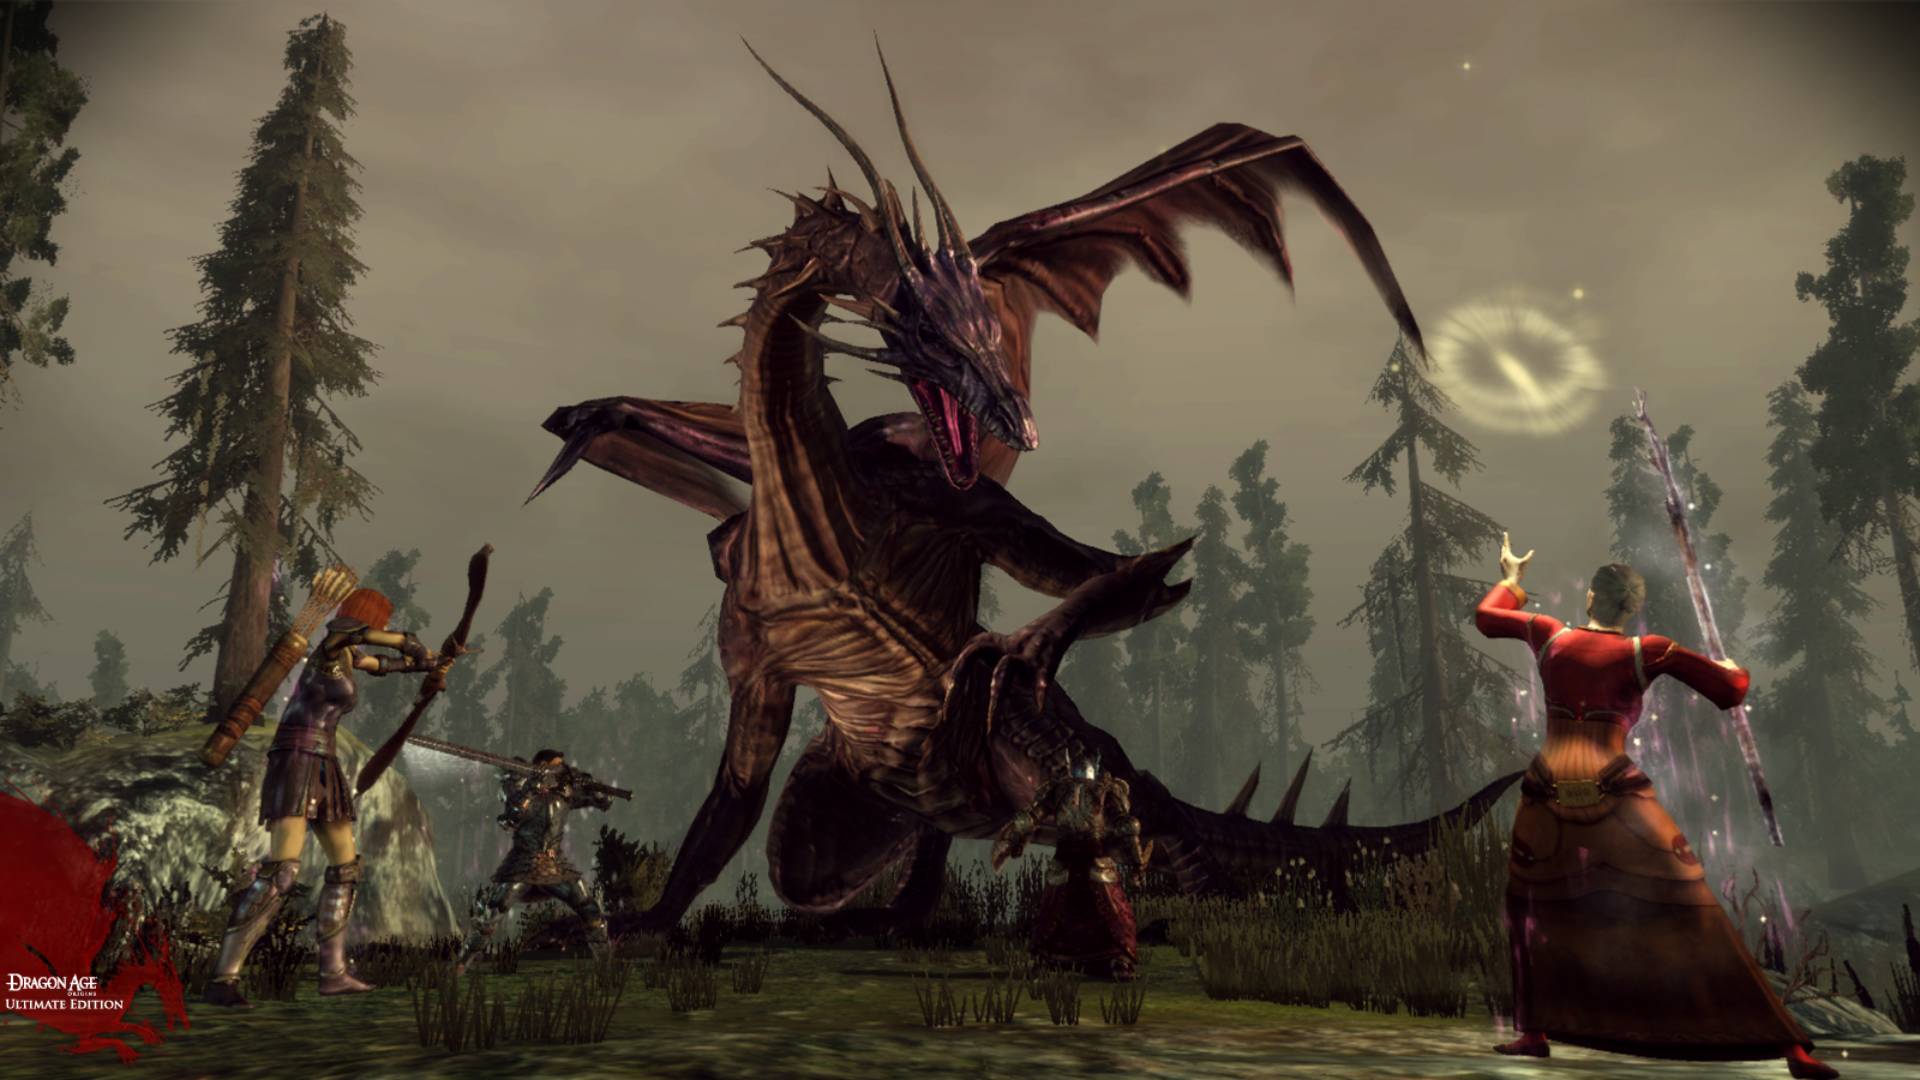 Personagens a atacar um dragão em Dragon Age: Origins - Ultimate Edition.